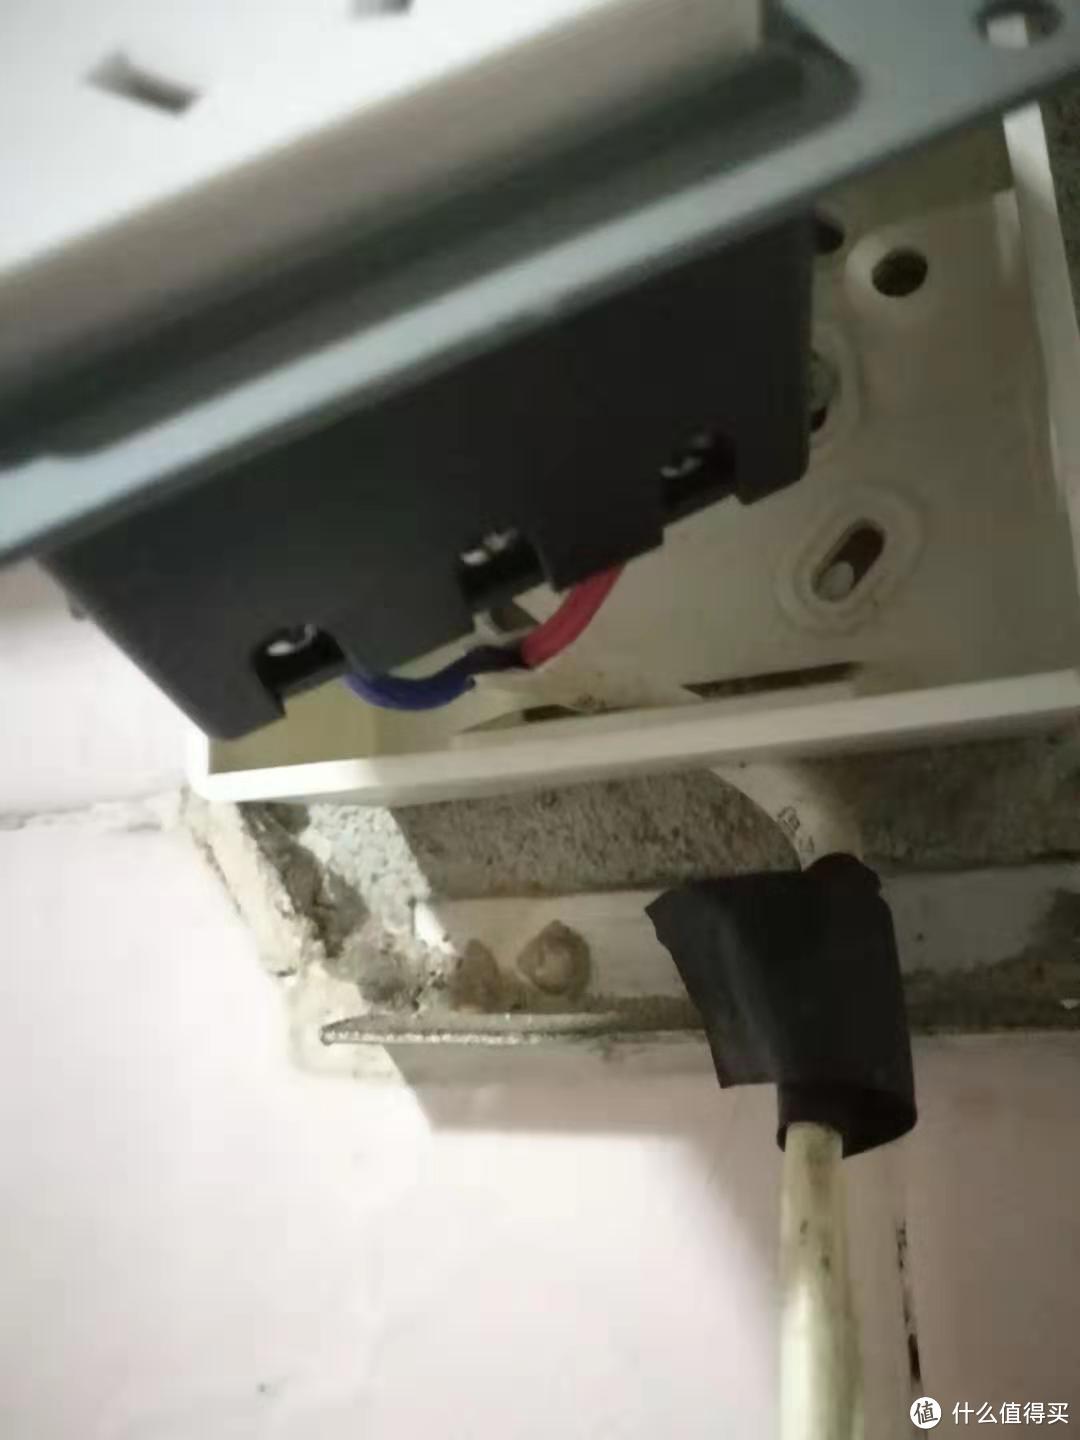 热水器插座没接地线怎么办 ——漏电保护插座